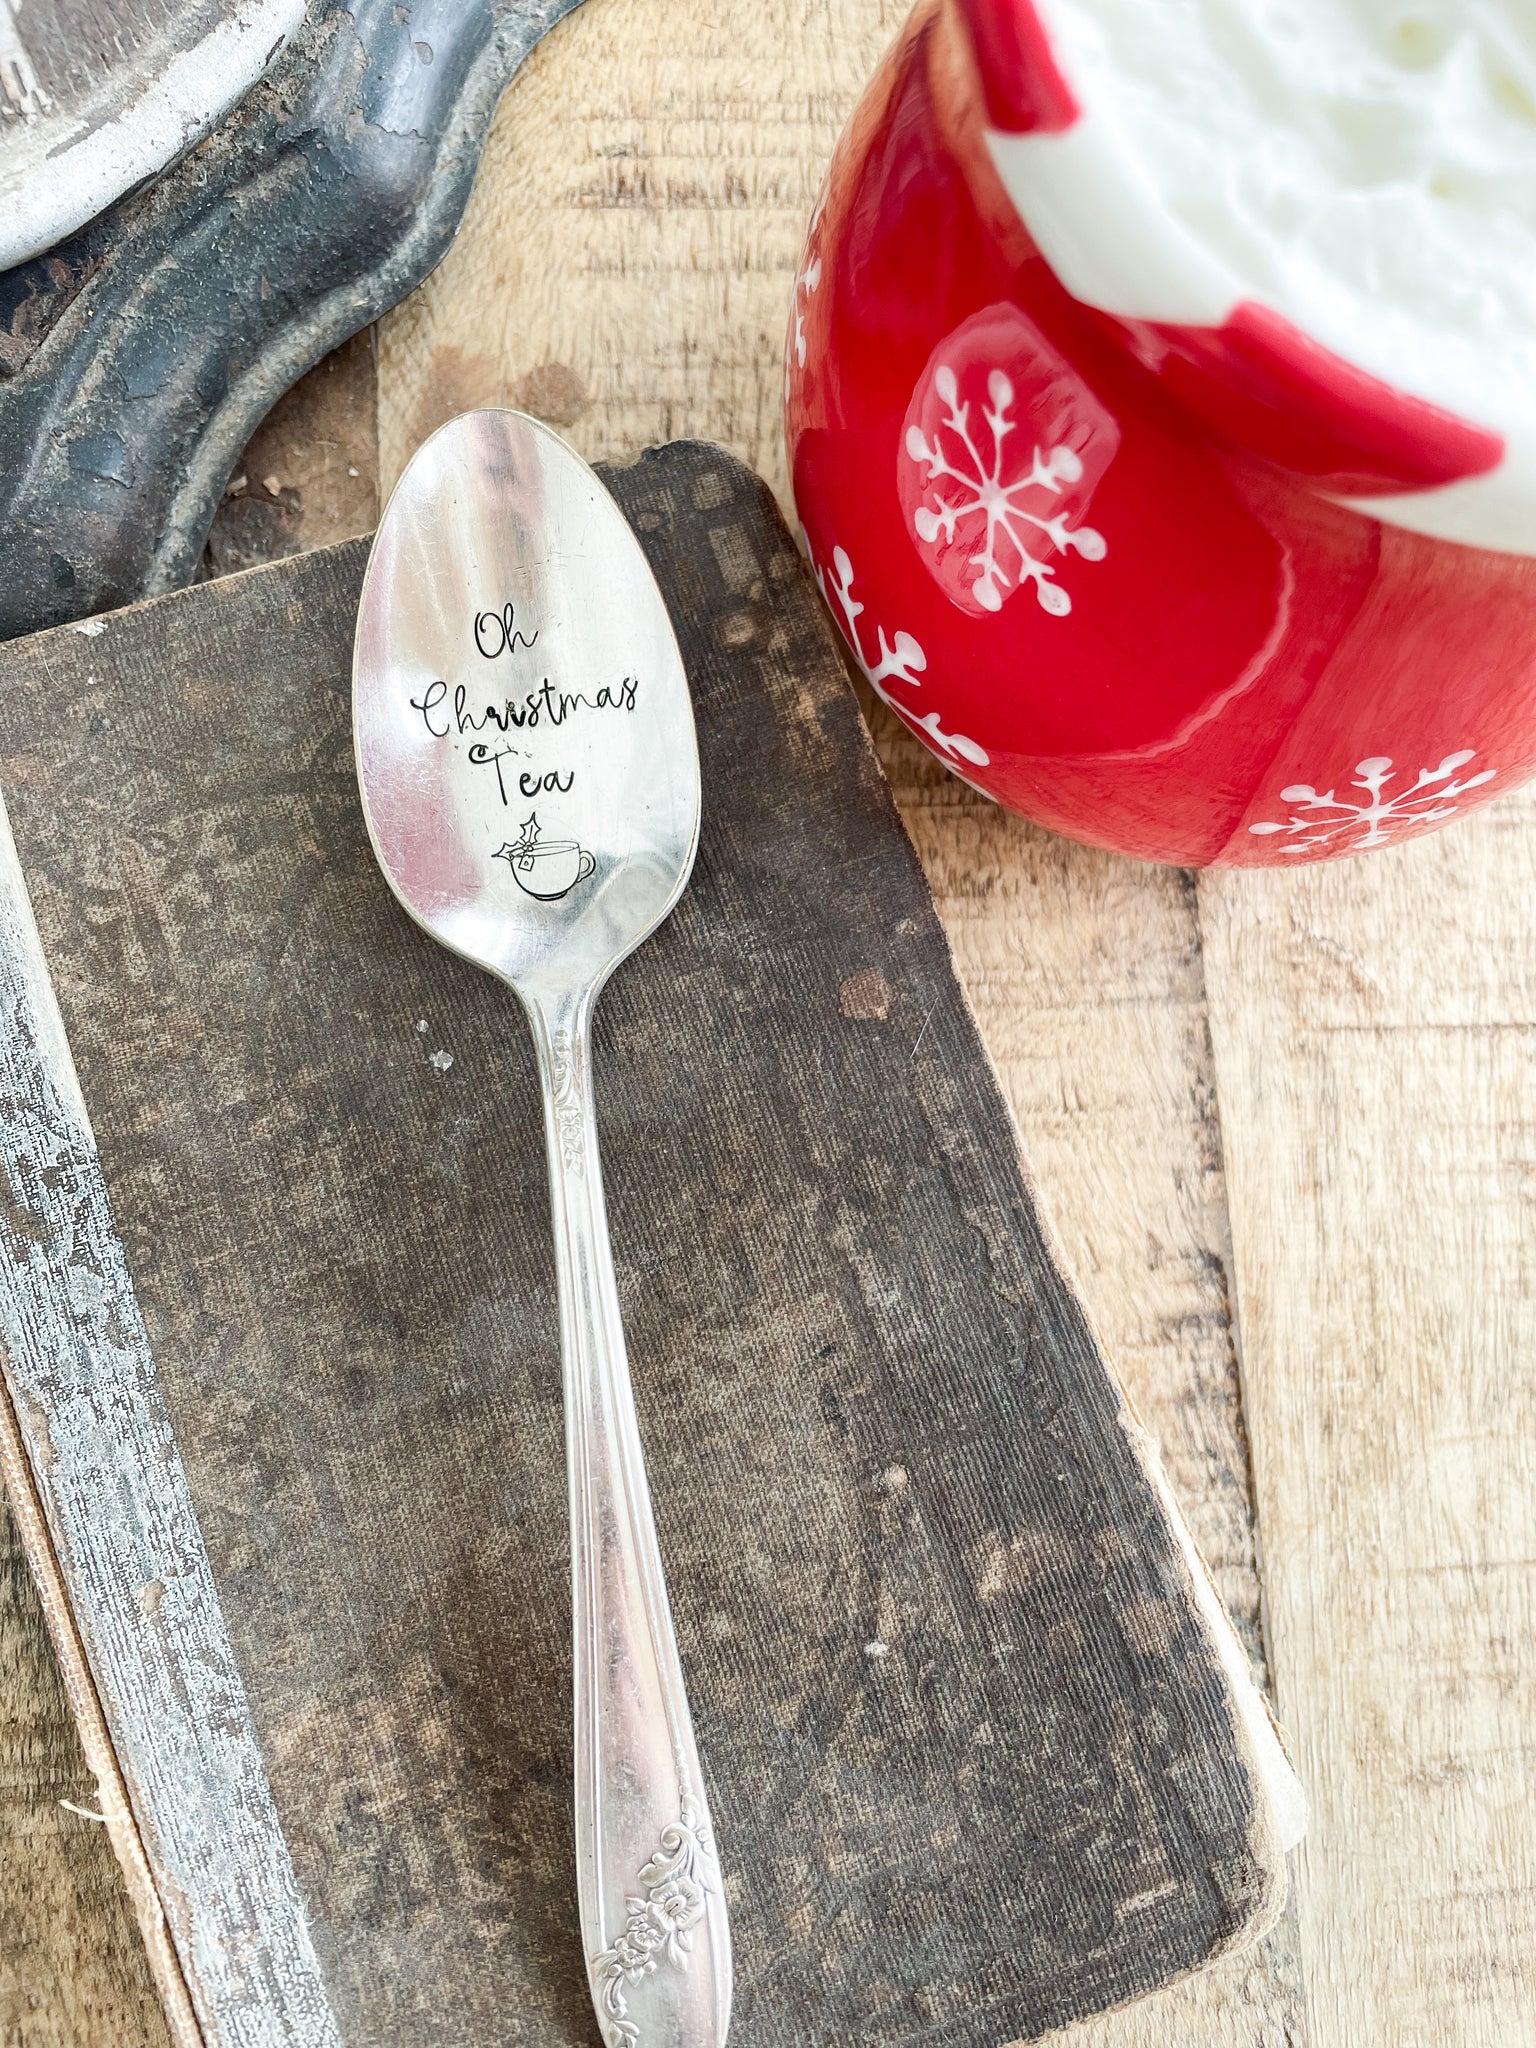 Oh Christmas Tea Vintage Spoon